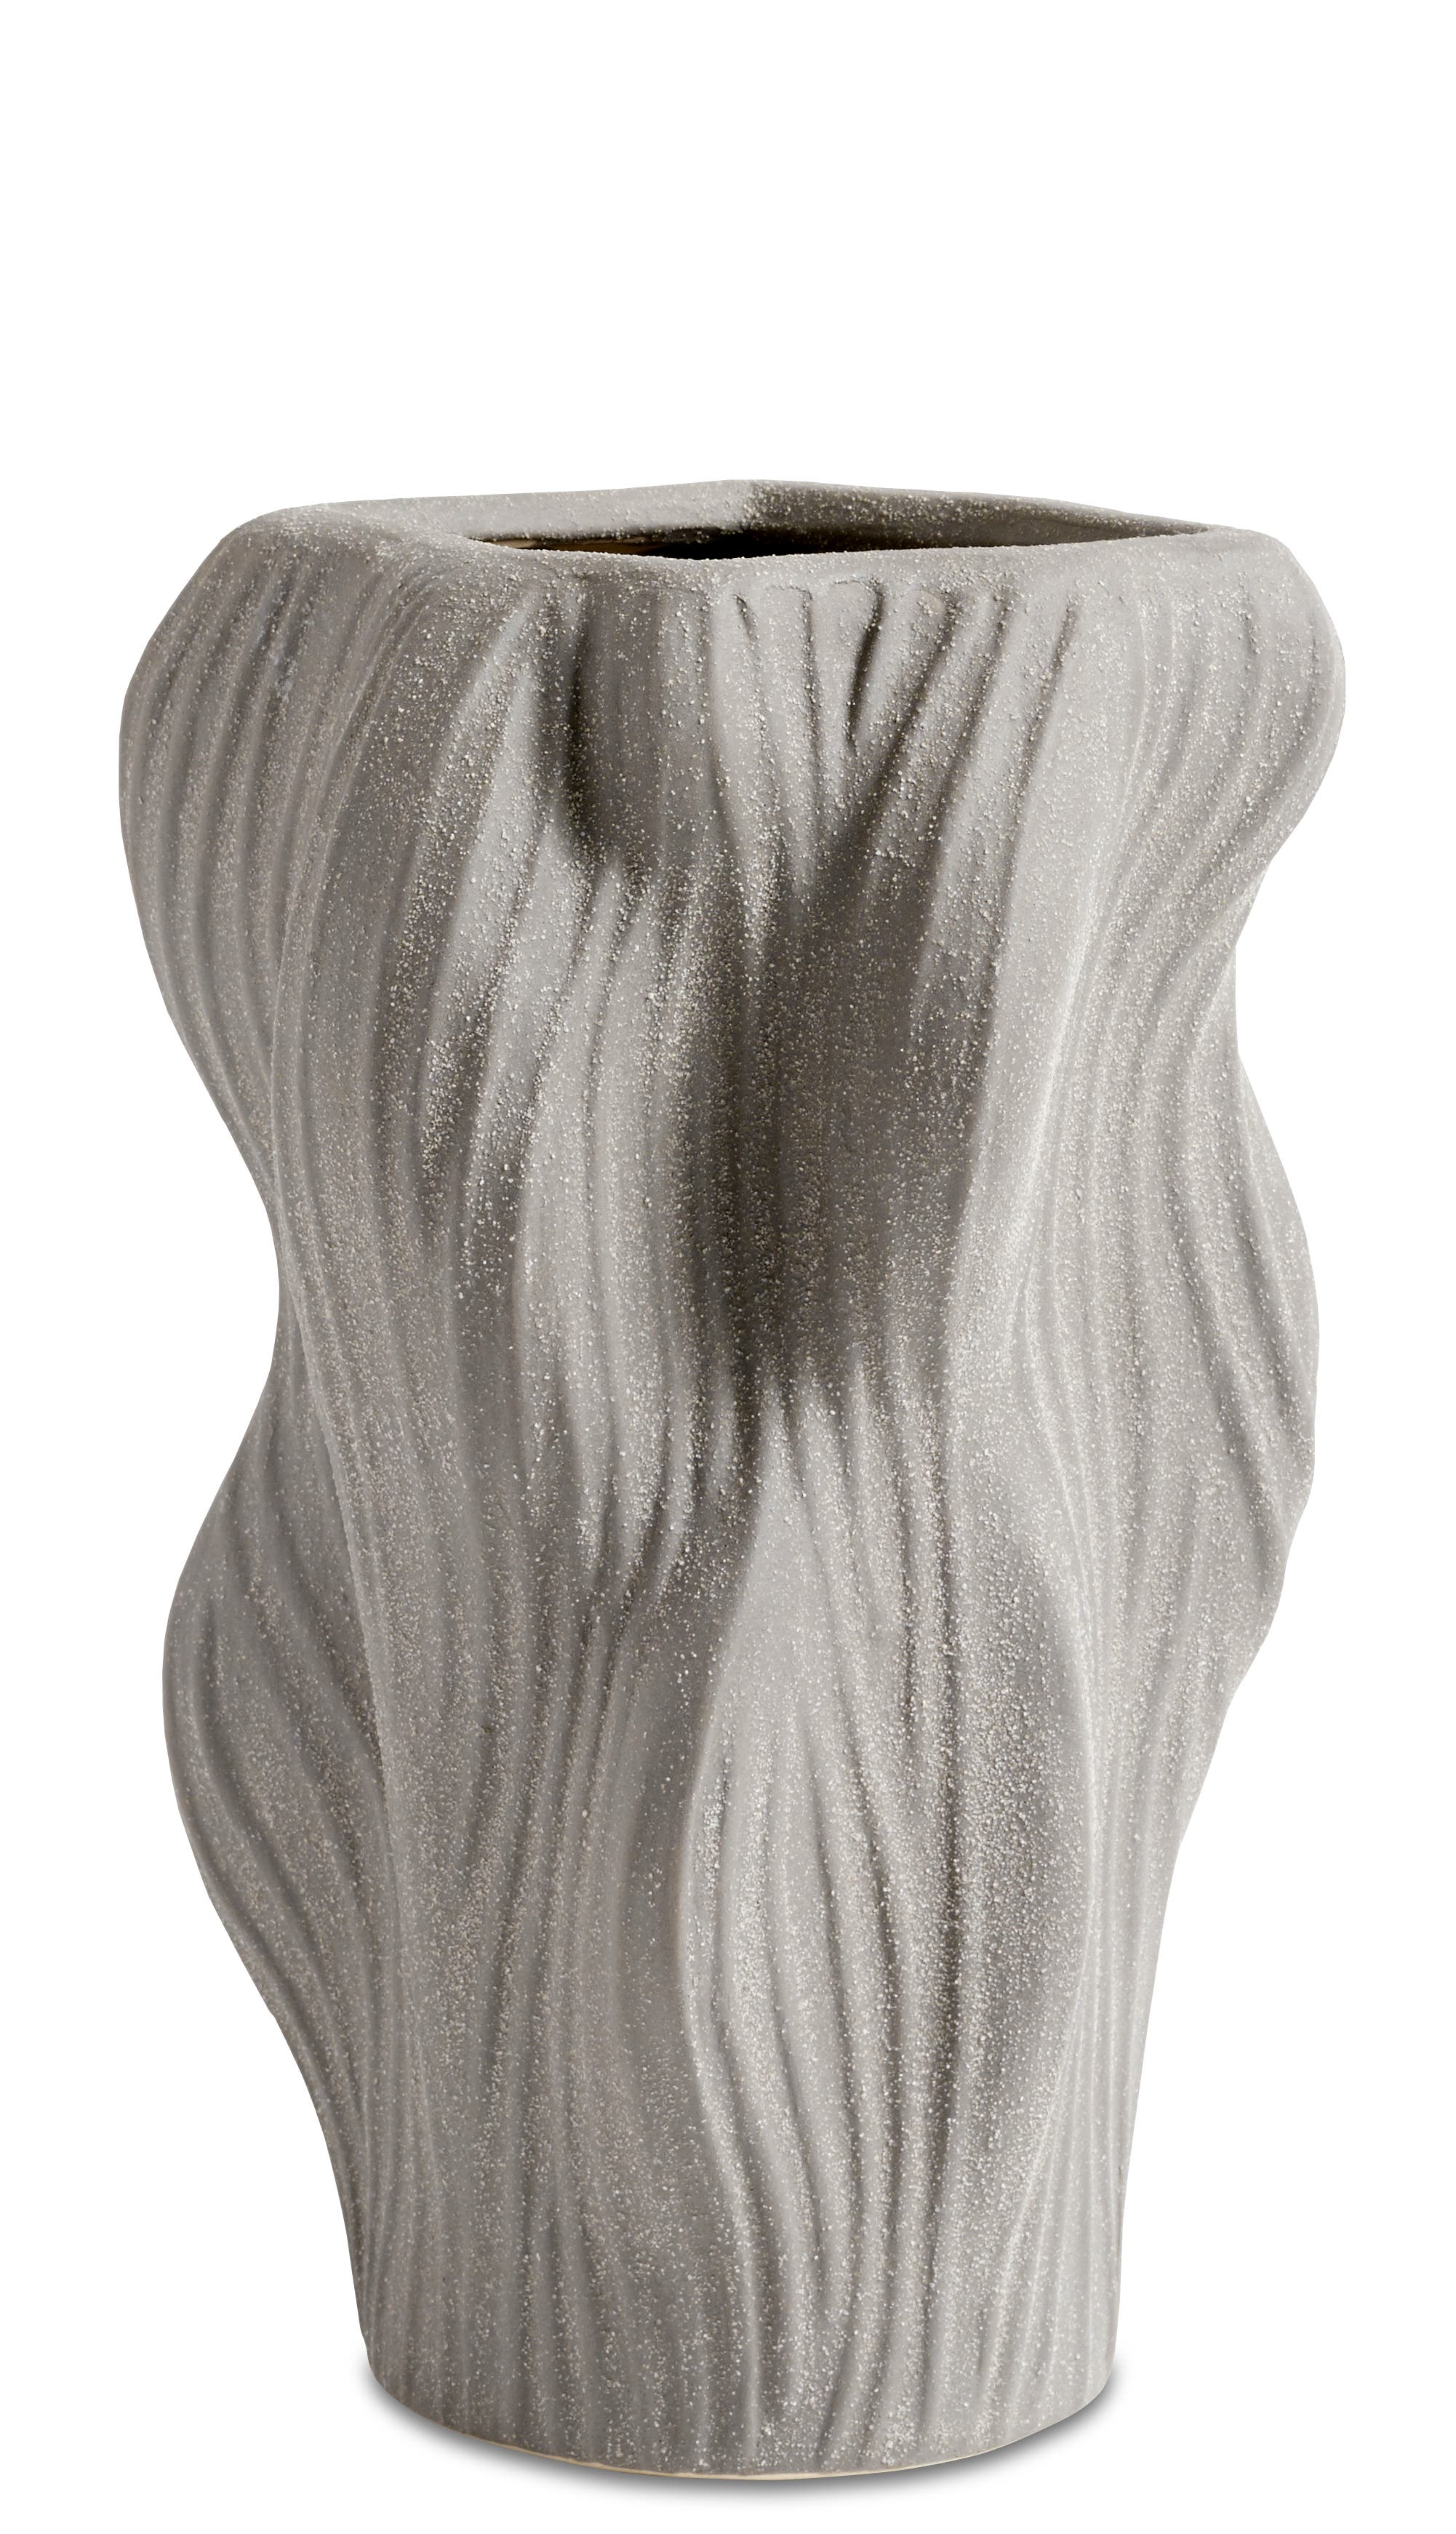 Water ripple vase